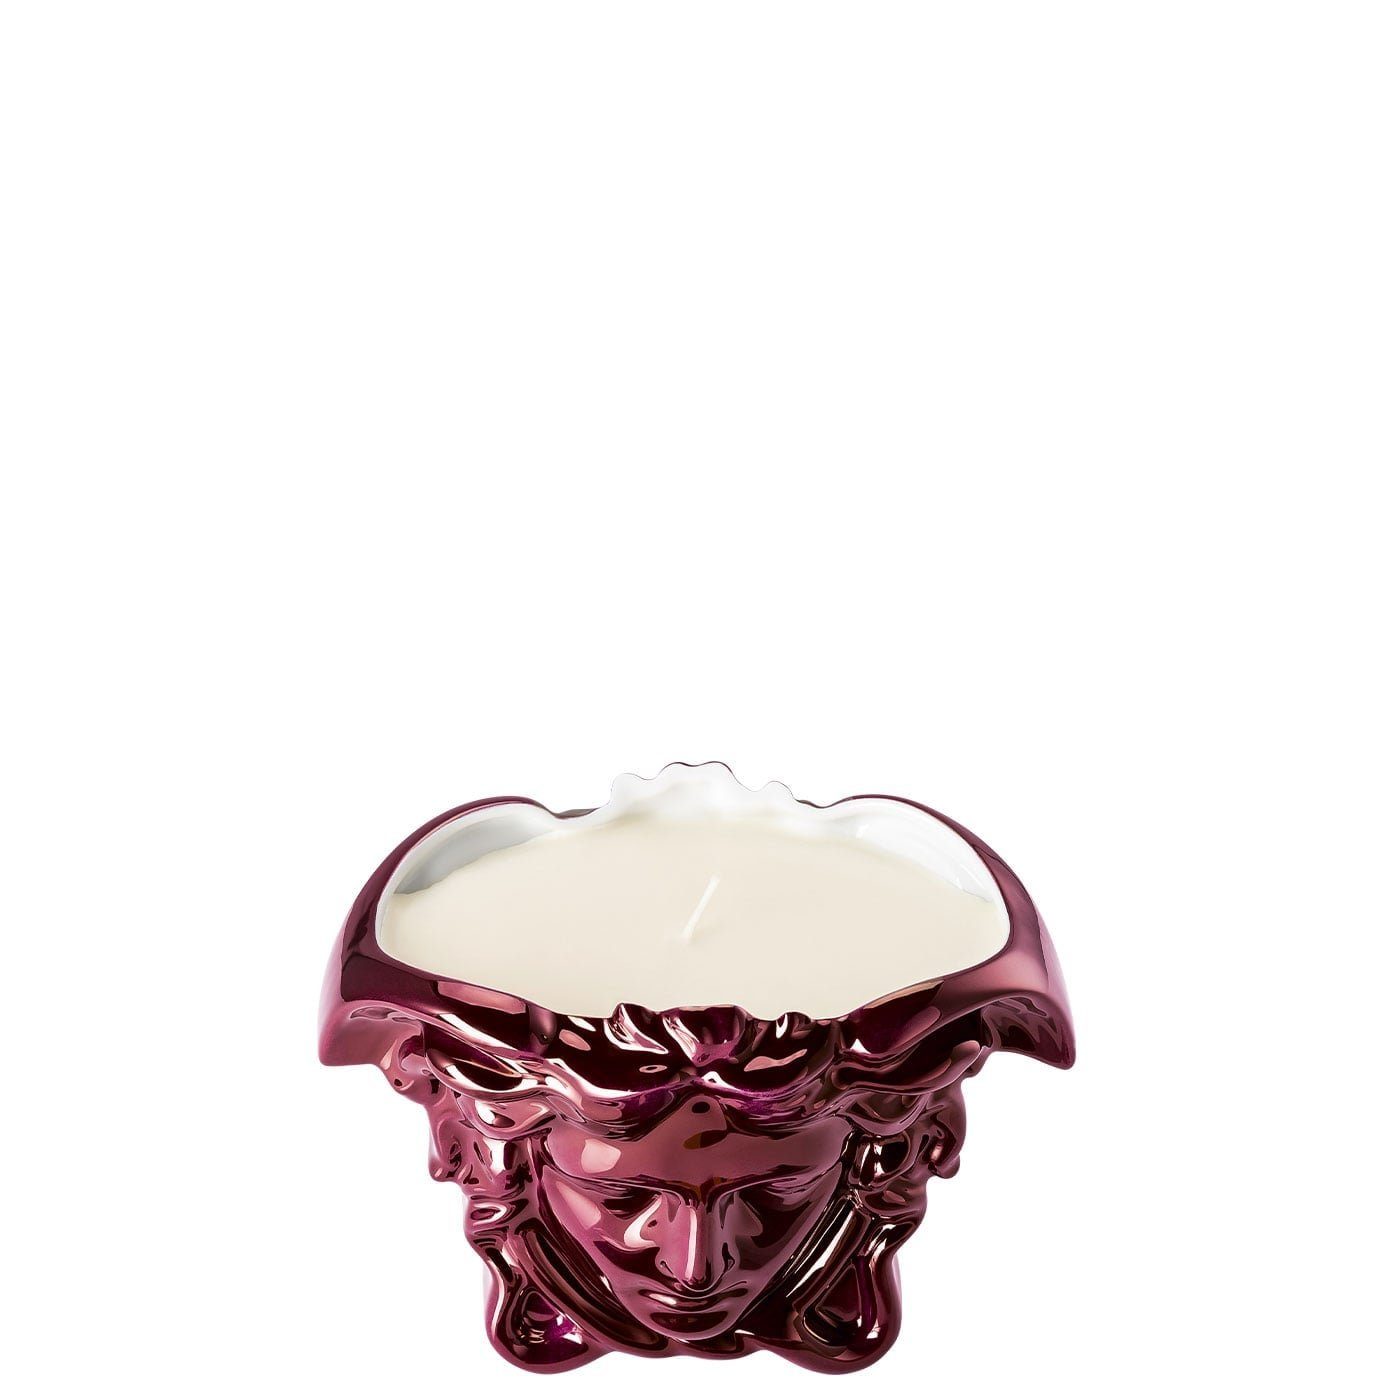 Tischlicht Grande Duftwachs Teelichthalter Rosenthal meets Versace Fuchsia Medusa mit